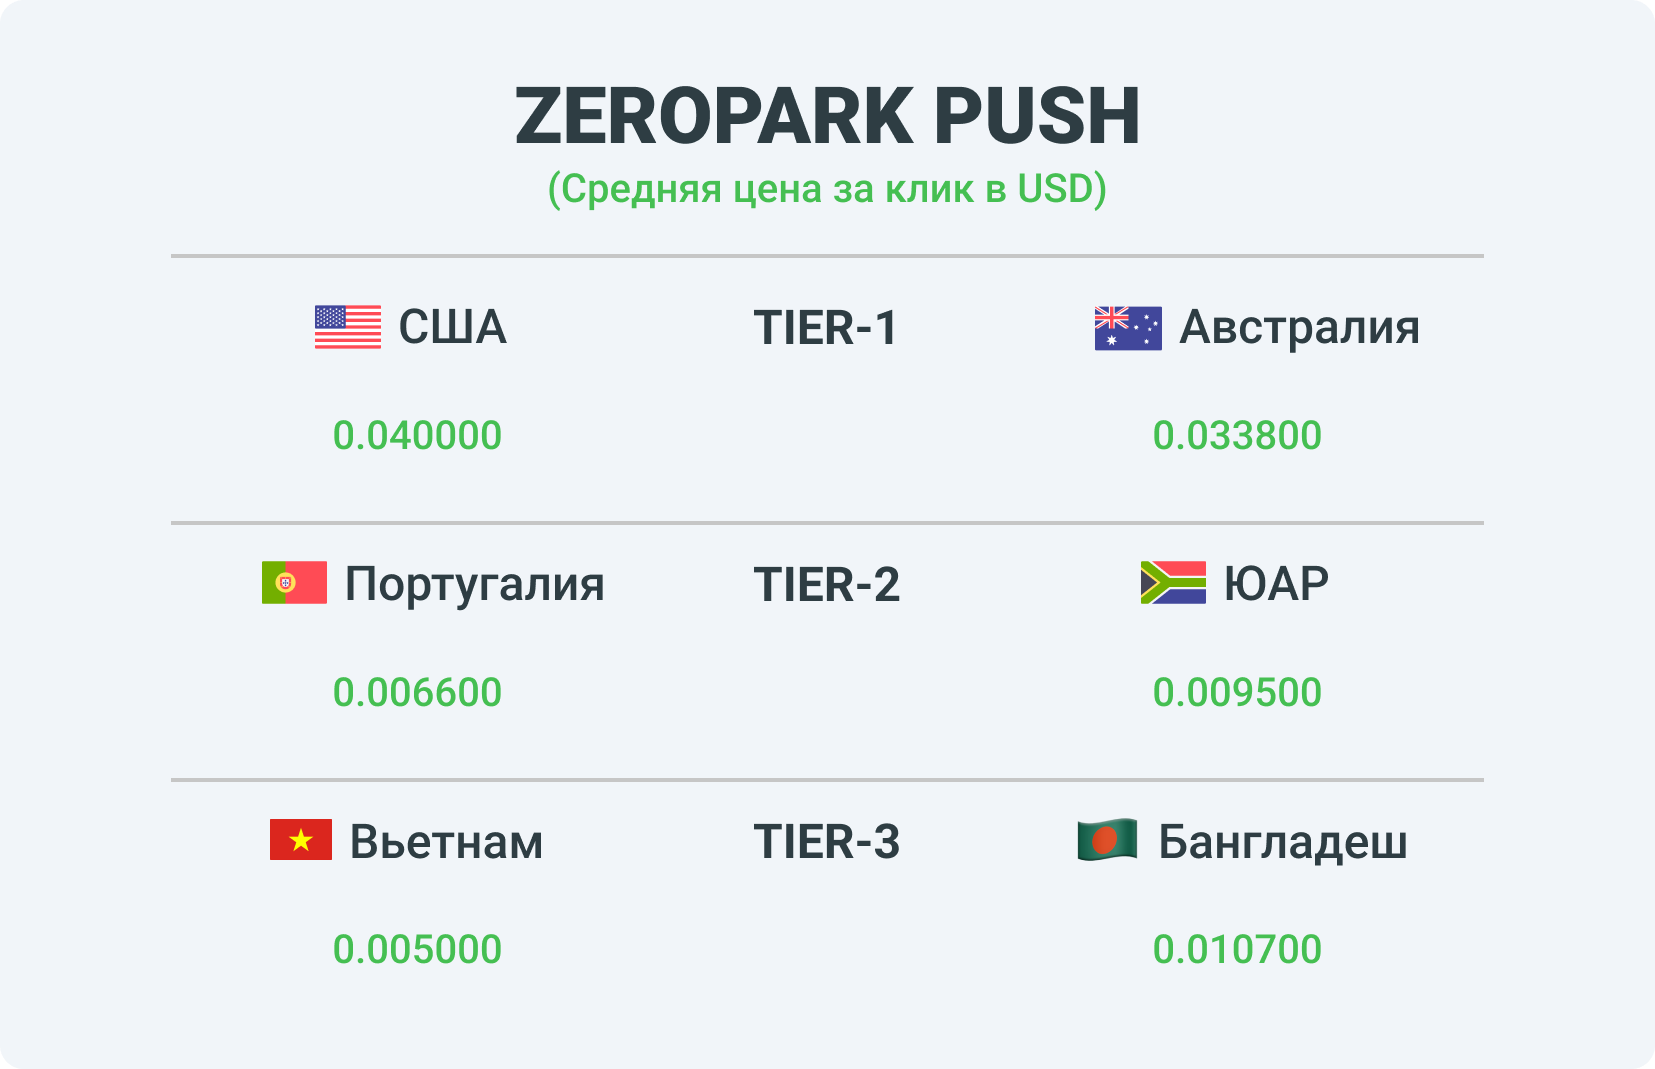 Ставки по разным тирам в рекламной сетке ZeroPark Push